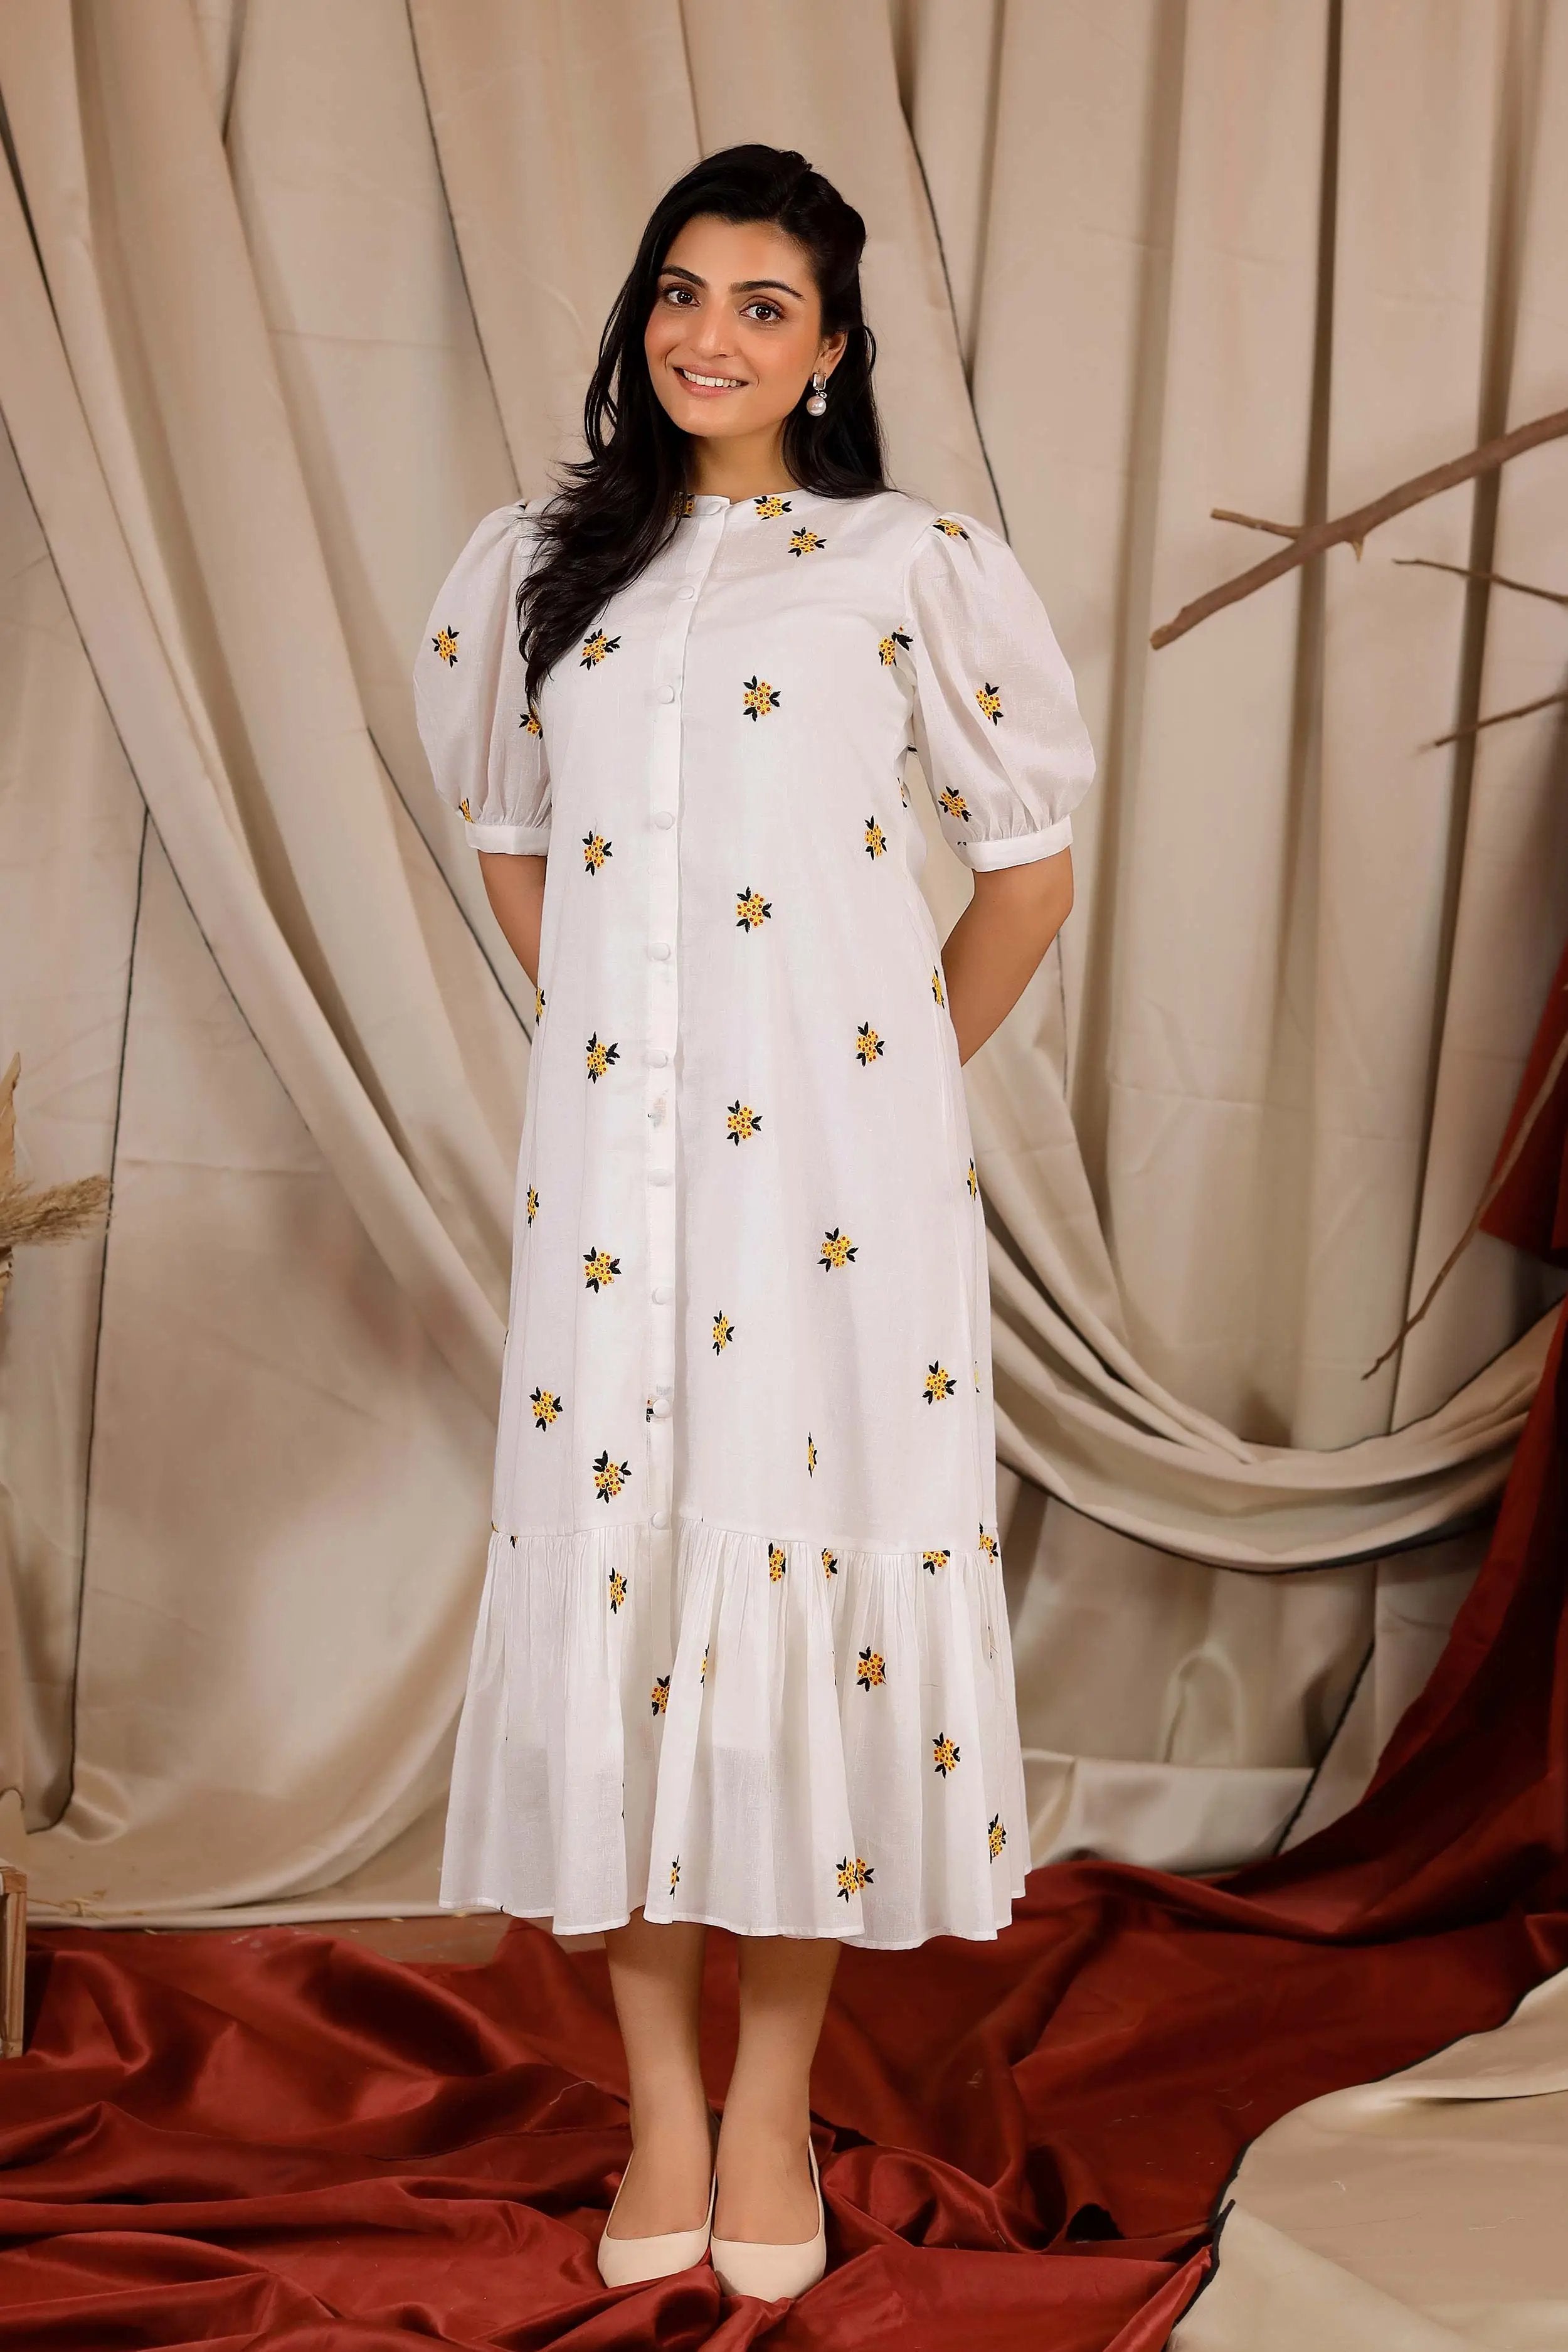 a woman in white long dress